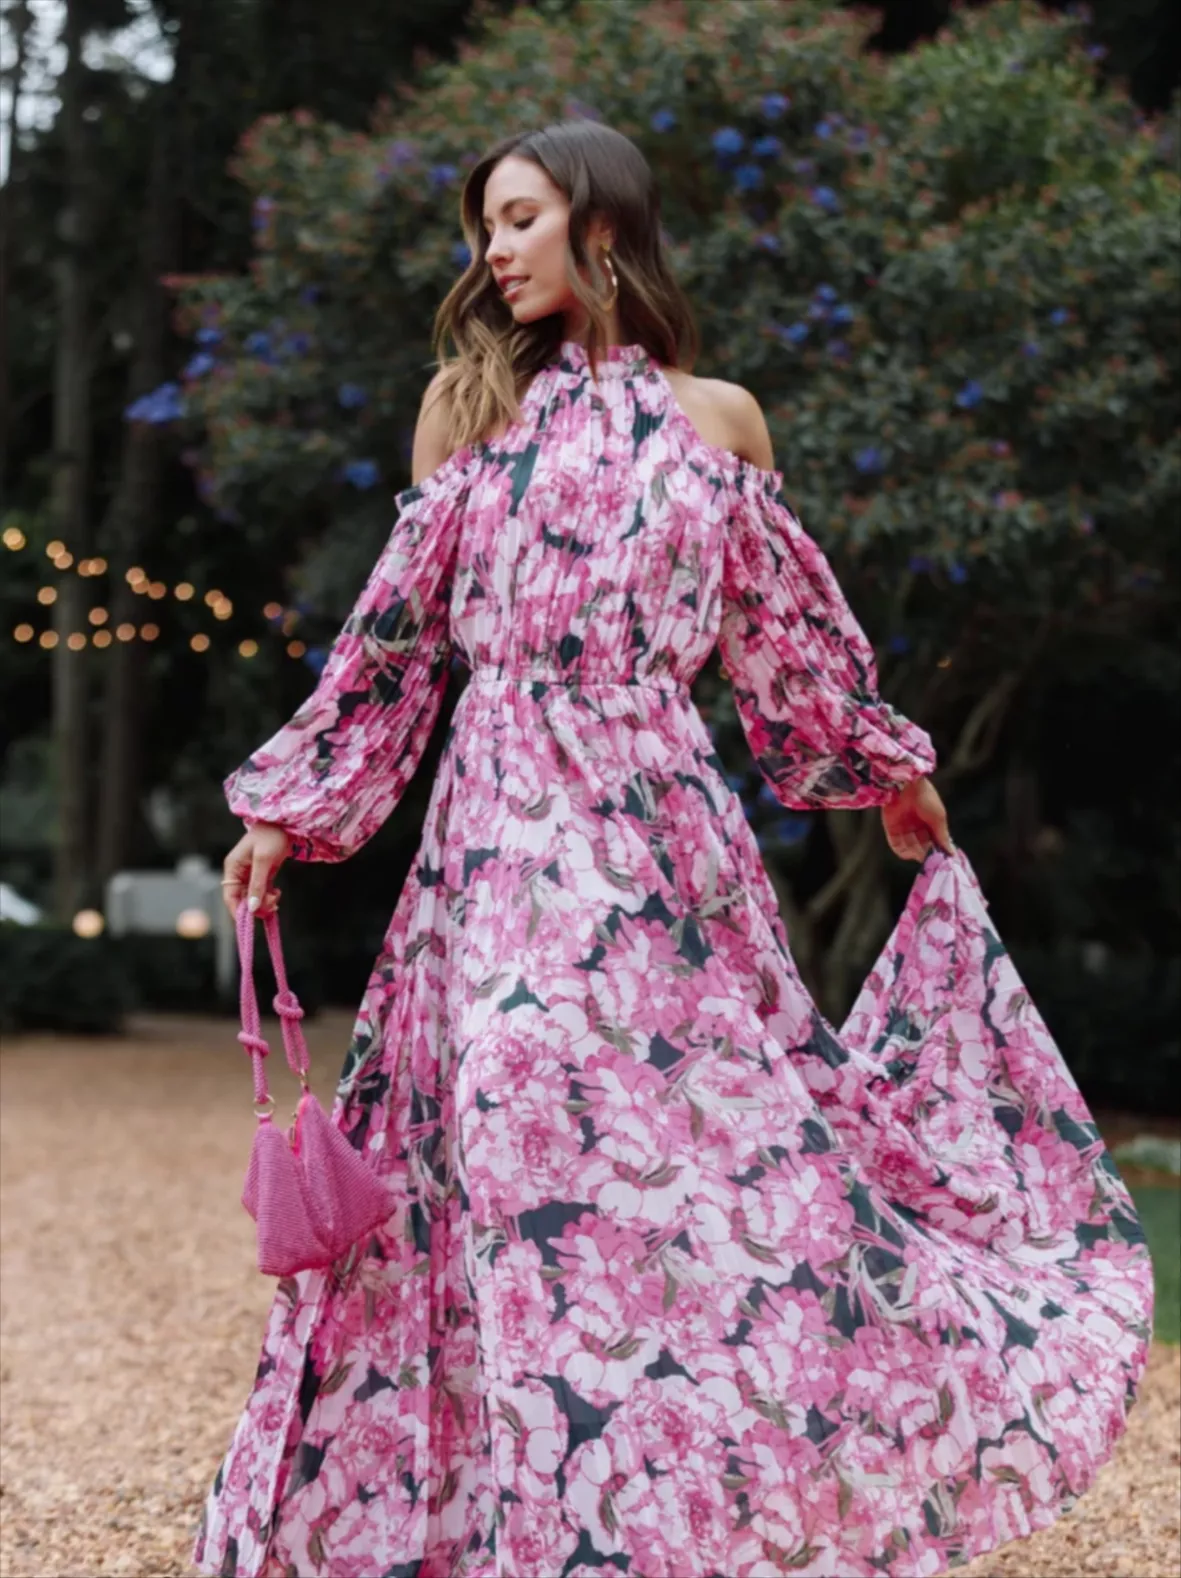 Lululemon Pink Blossom Set  Clothes design, Fashion tips, Pink